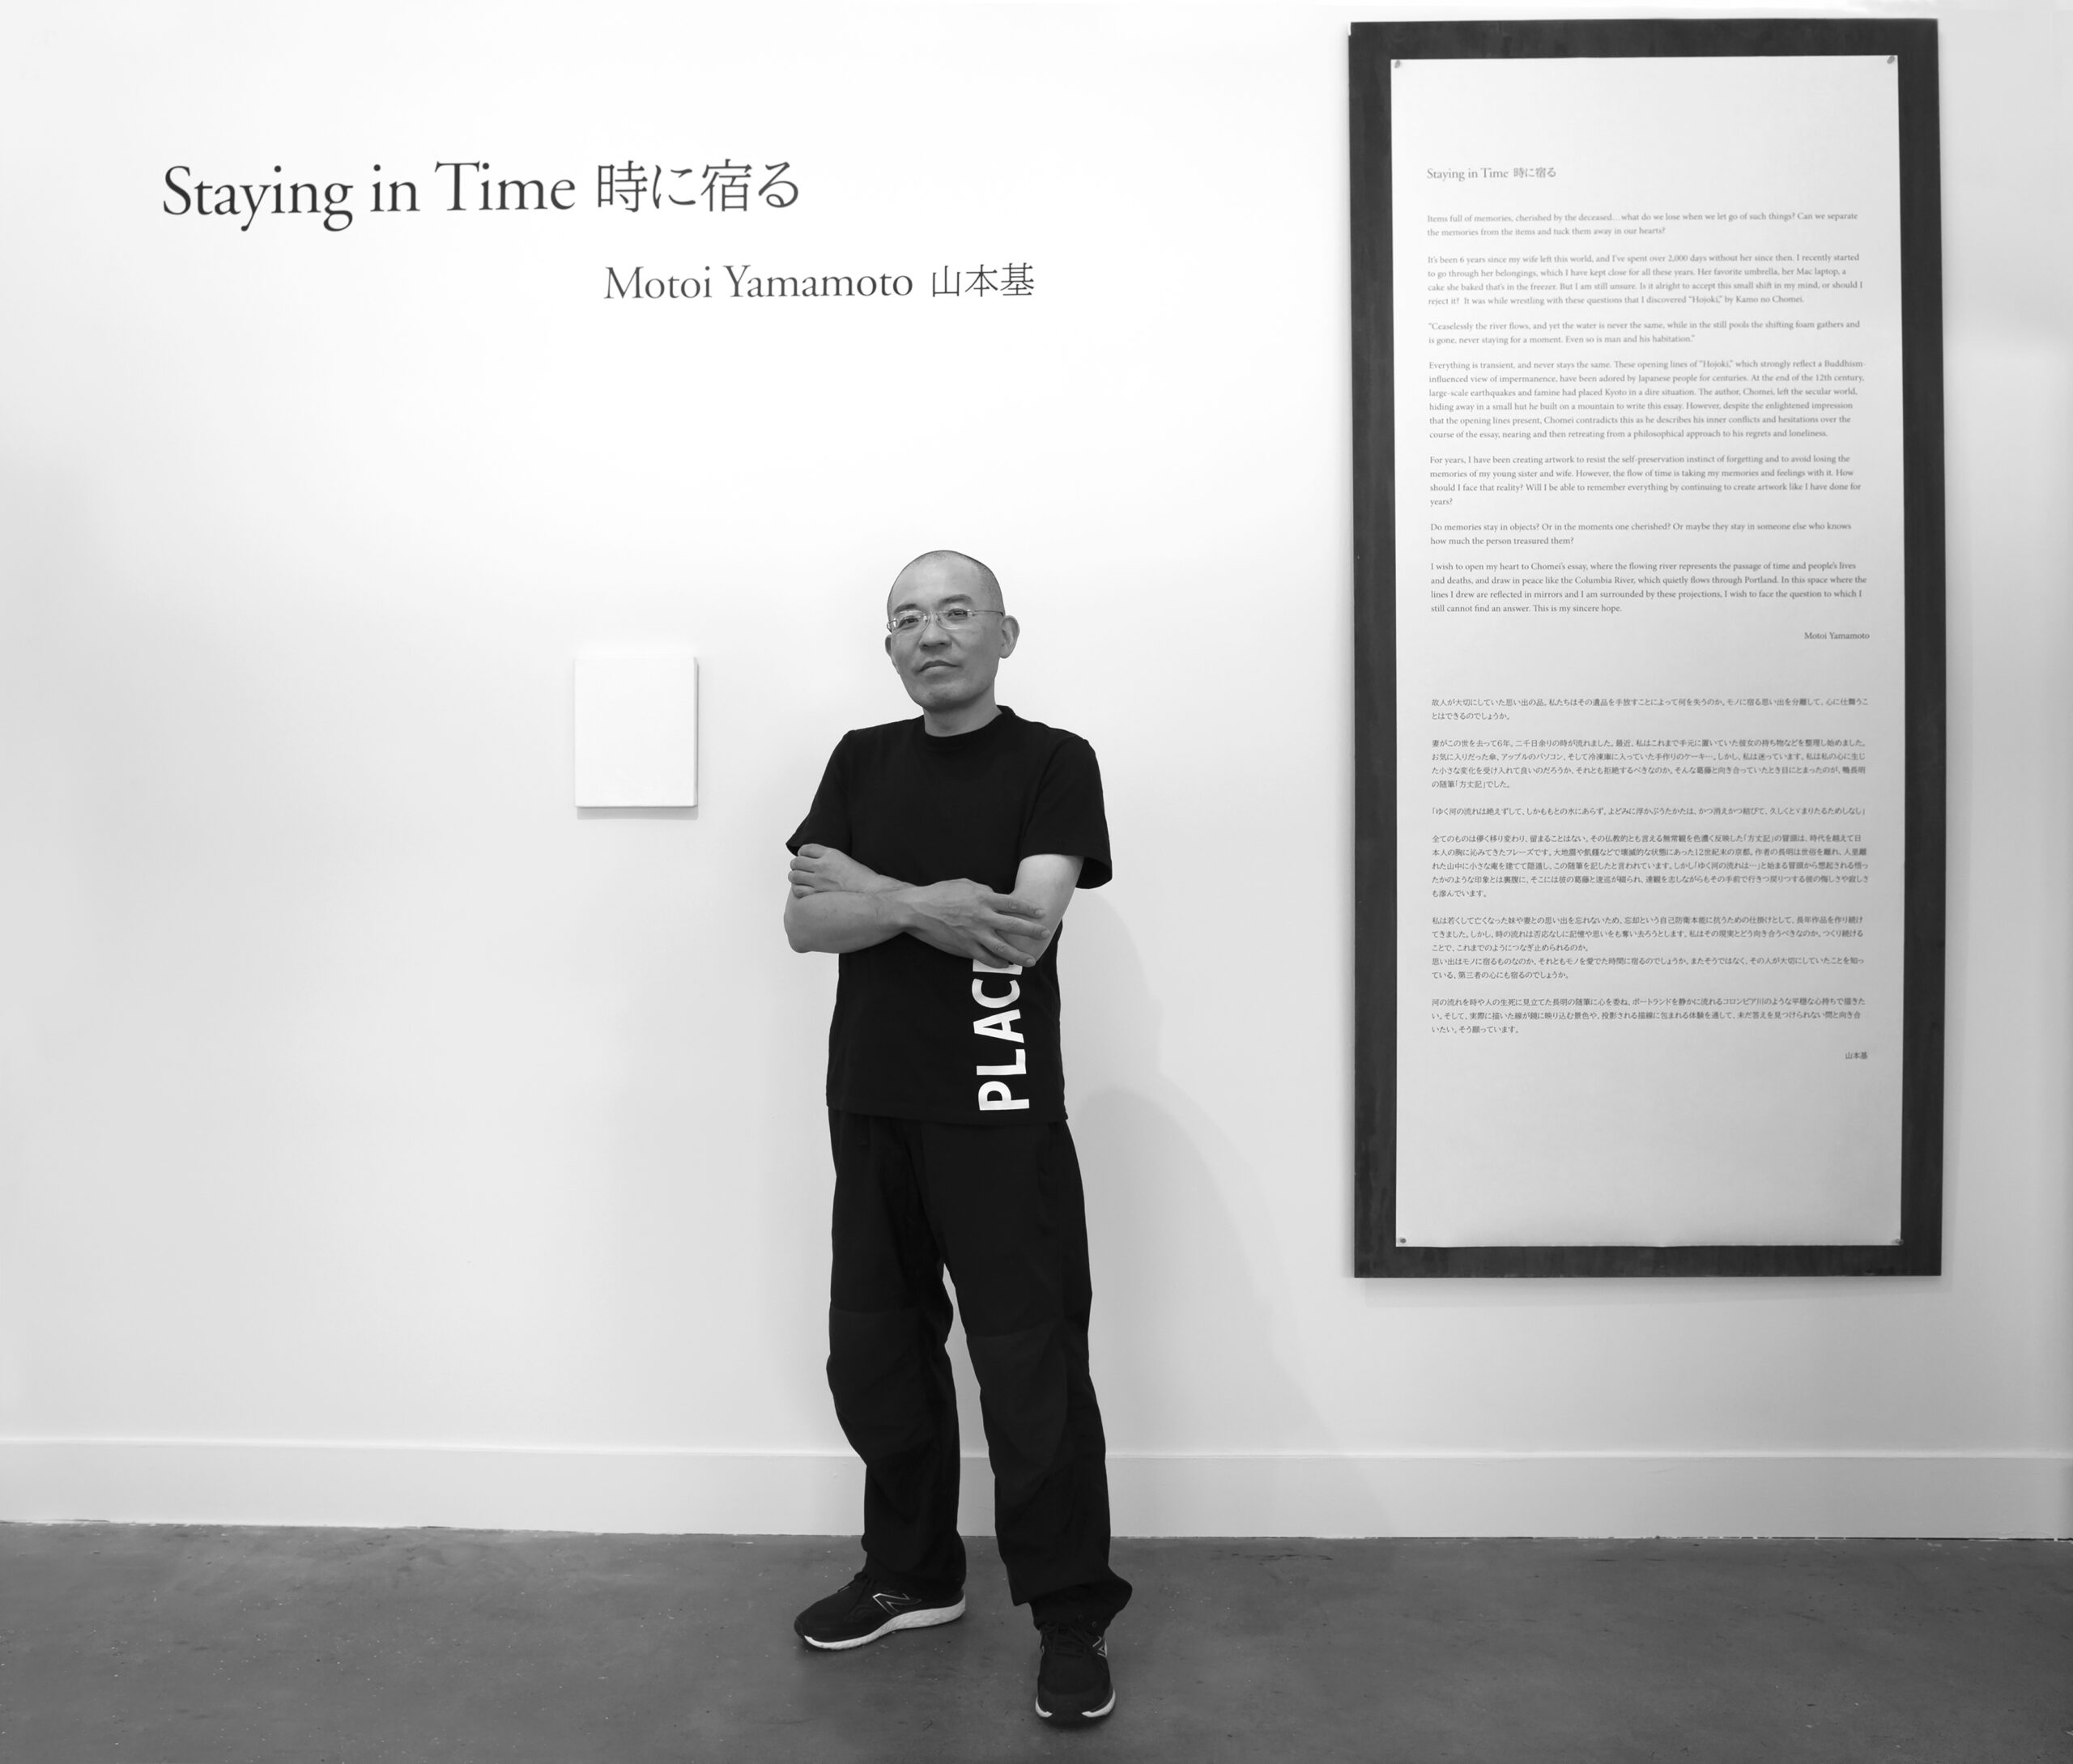 Staying in Time | Motoi Yamamoto | Image 9/11